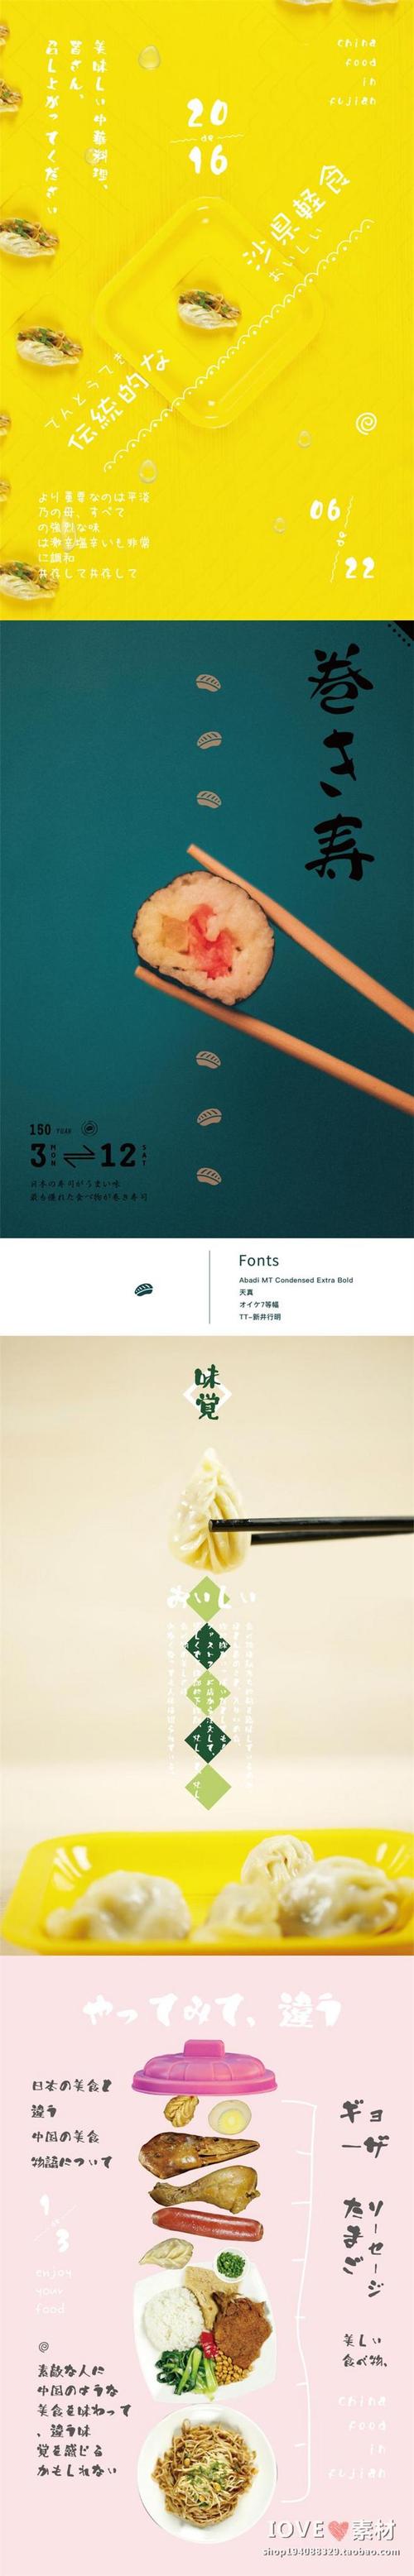 文艺日系杂志风格小清新美食食物海报文字排版矢量图设计素材i170淘宝